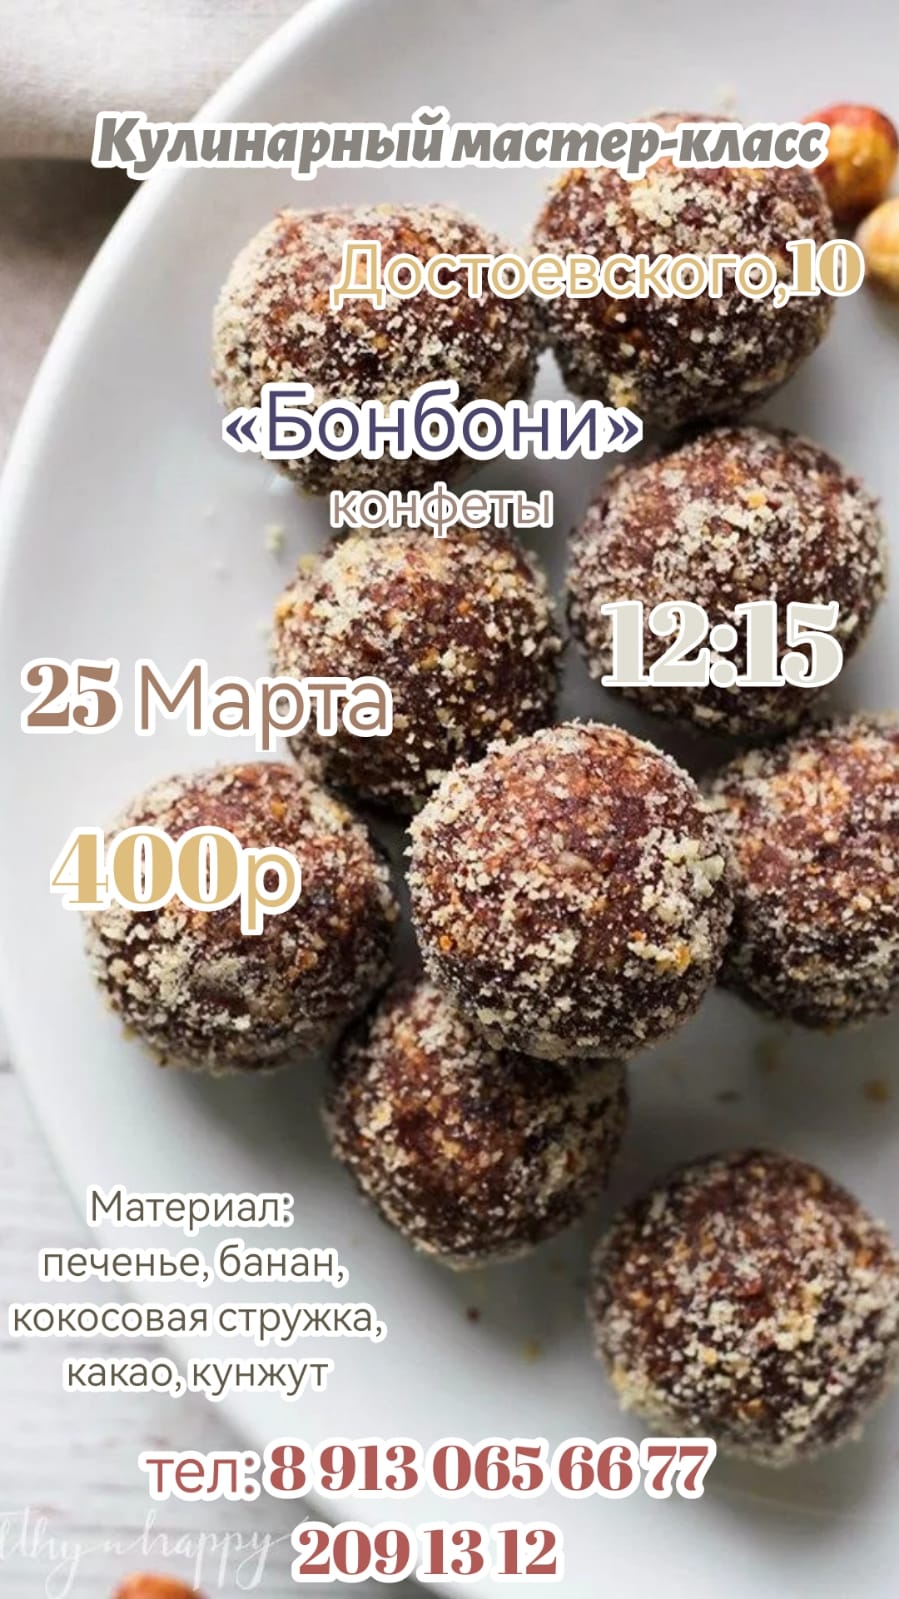 Детский сад в Новосибирске: Кулинарный мастер класс - конфеты Бонбони - в субботу, 25 марта, в 12.15